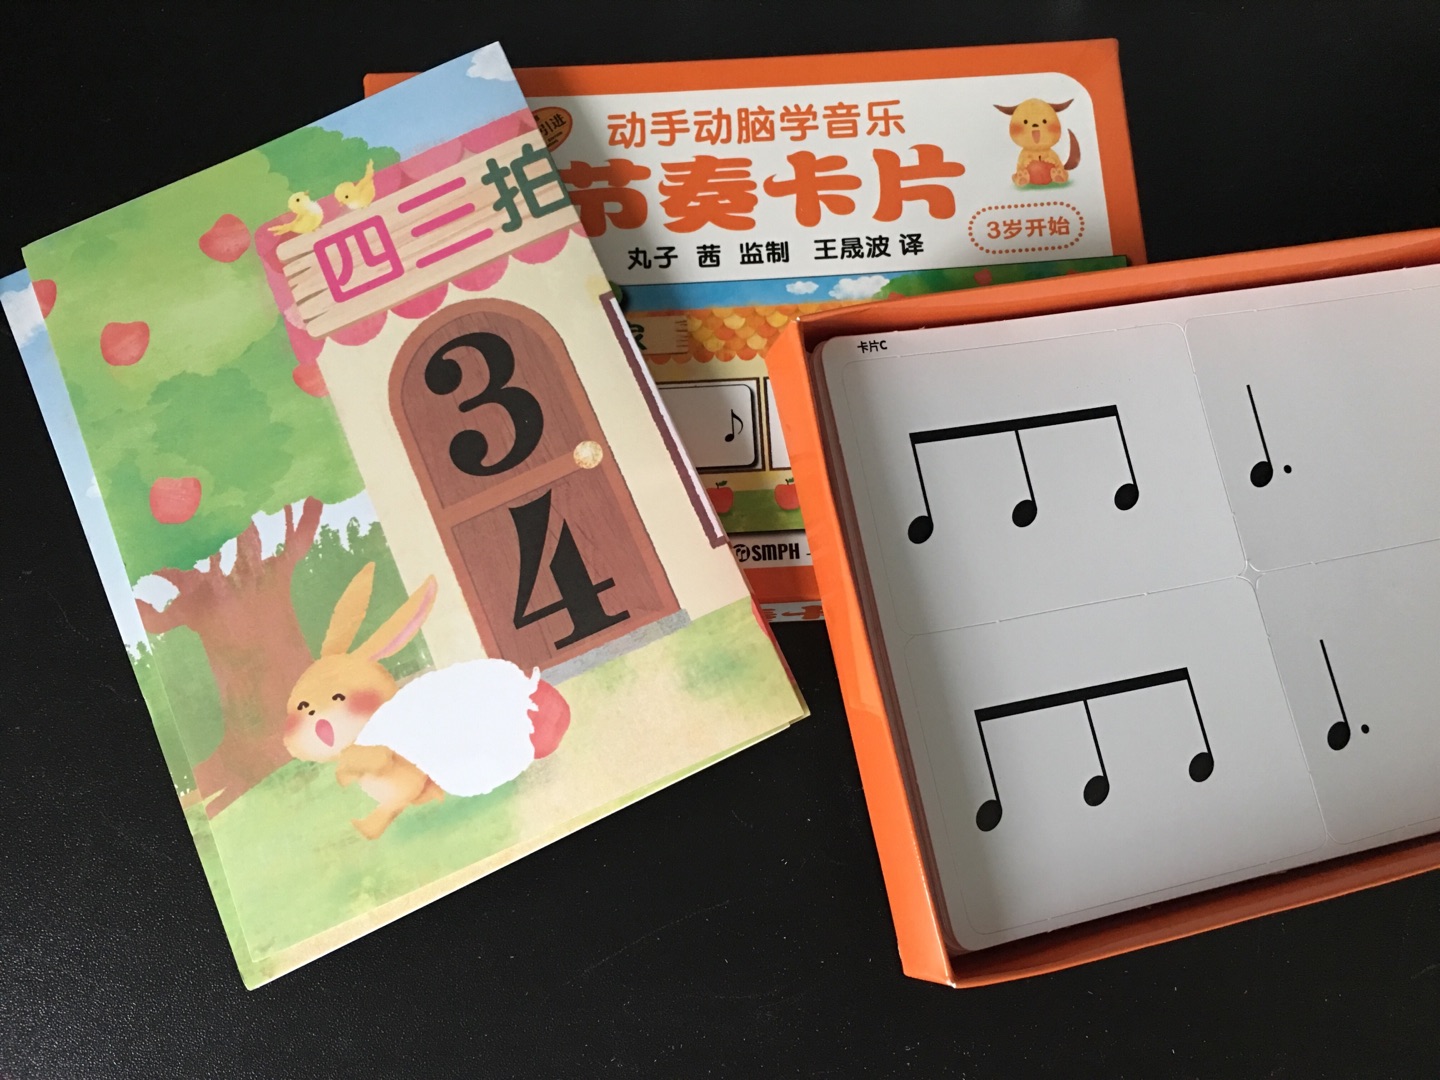 卡片印刷量不错，很清晰，对儿童学习音乐很有帮助。